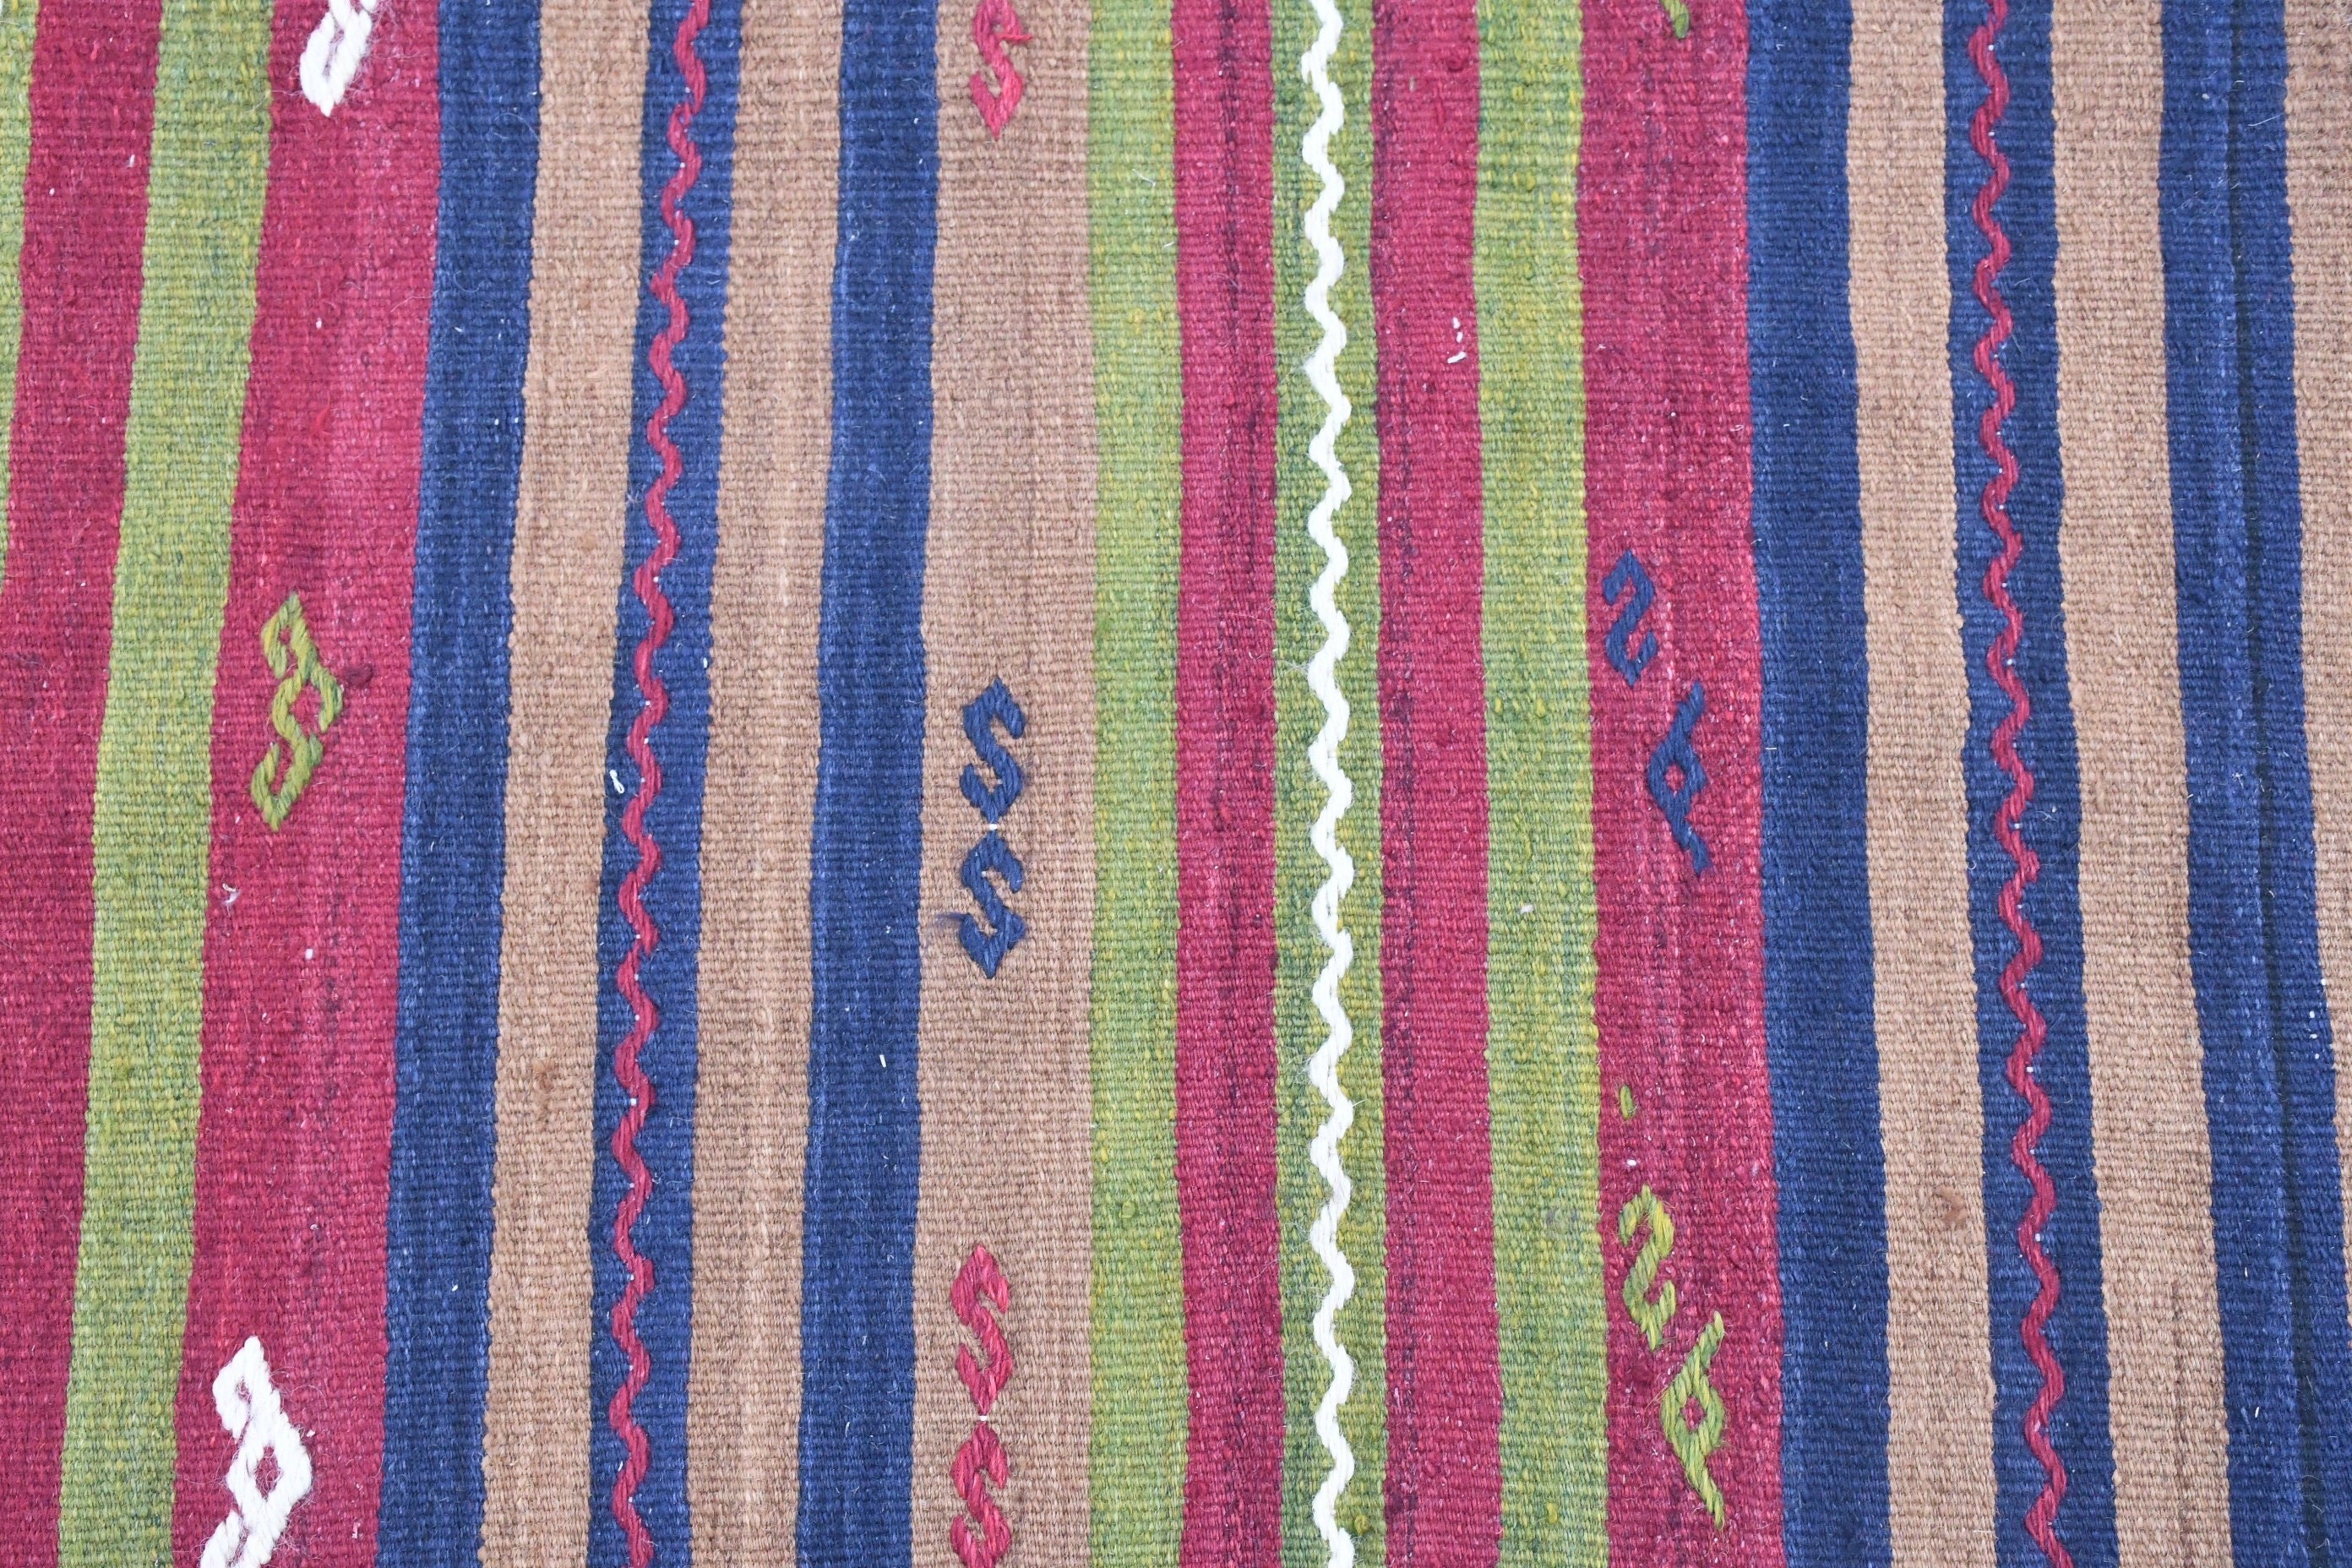 Vintage Rugs, Turkish Rug, Kilim, Corridor Rug, 2.7x12.1 ft Runner Rug, Rugs for Corridor, Moroccan Rugs, Pale Rug, Stair Rugs, Bedroom Rug